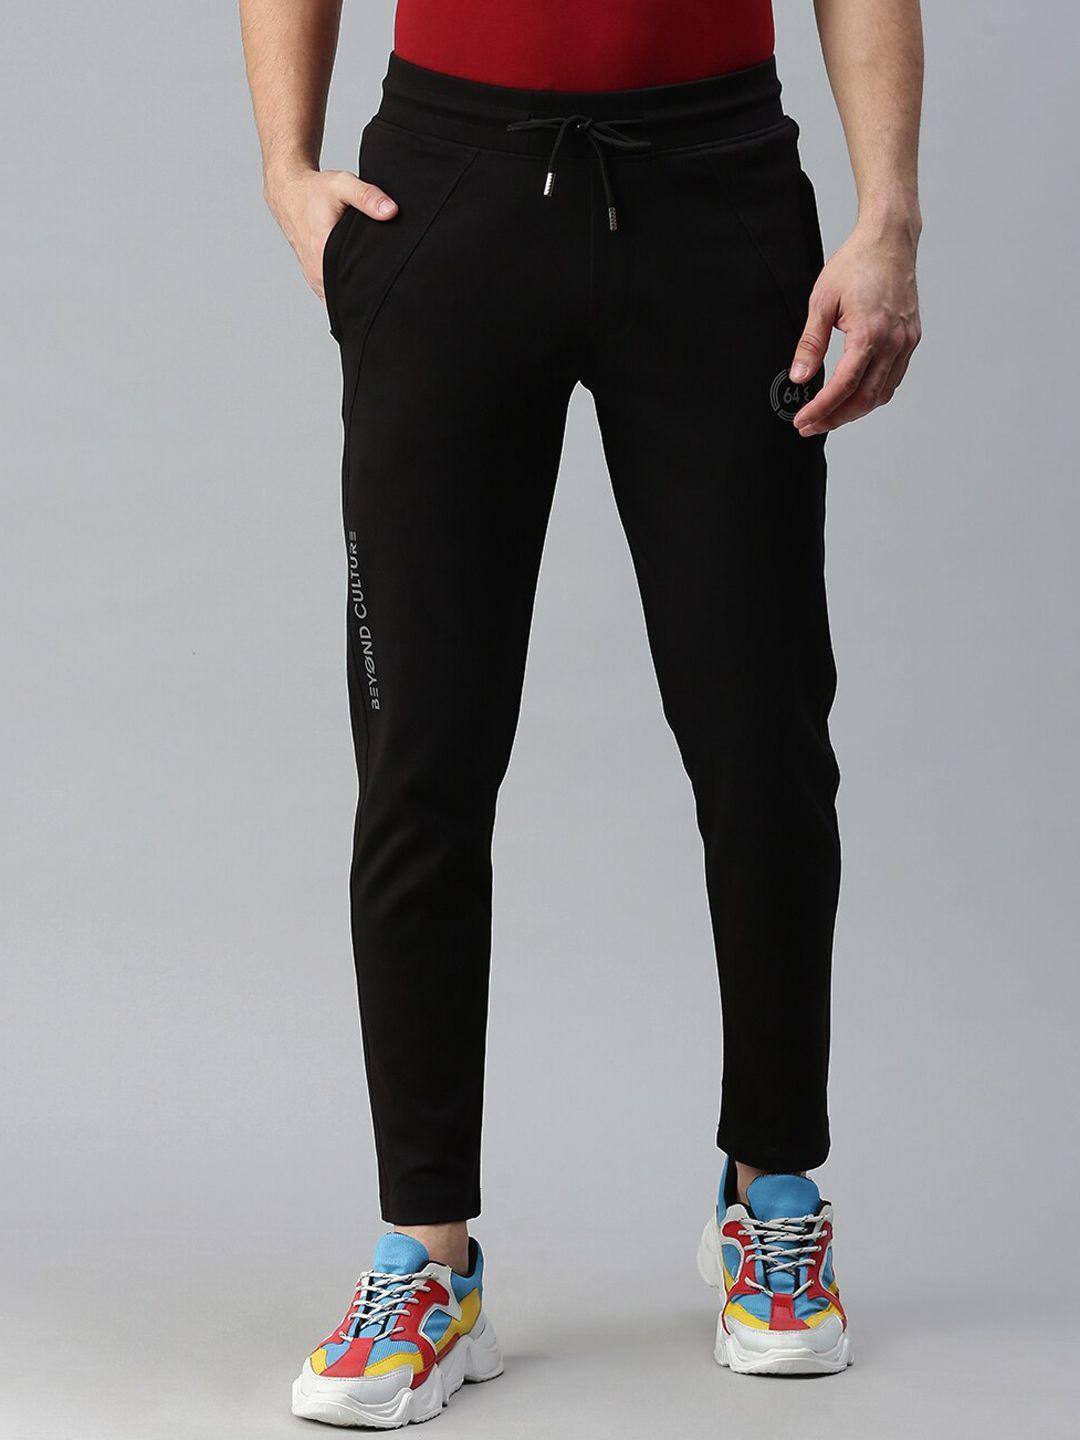 showoff-men-black-solid-slim-fit-track-pants